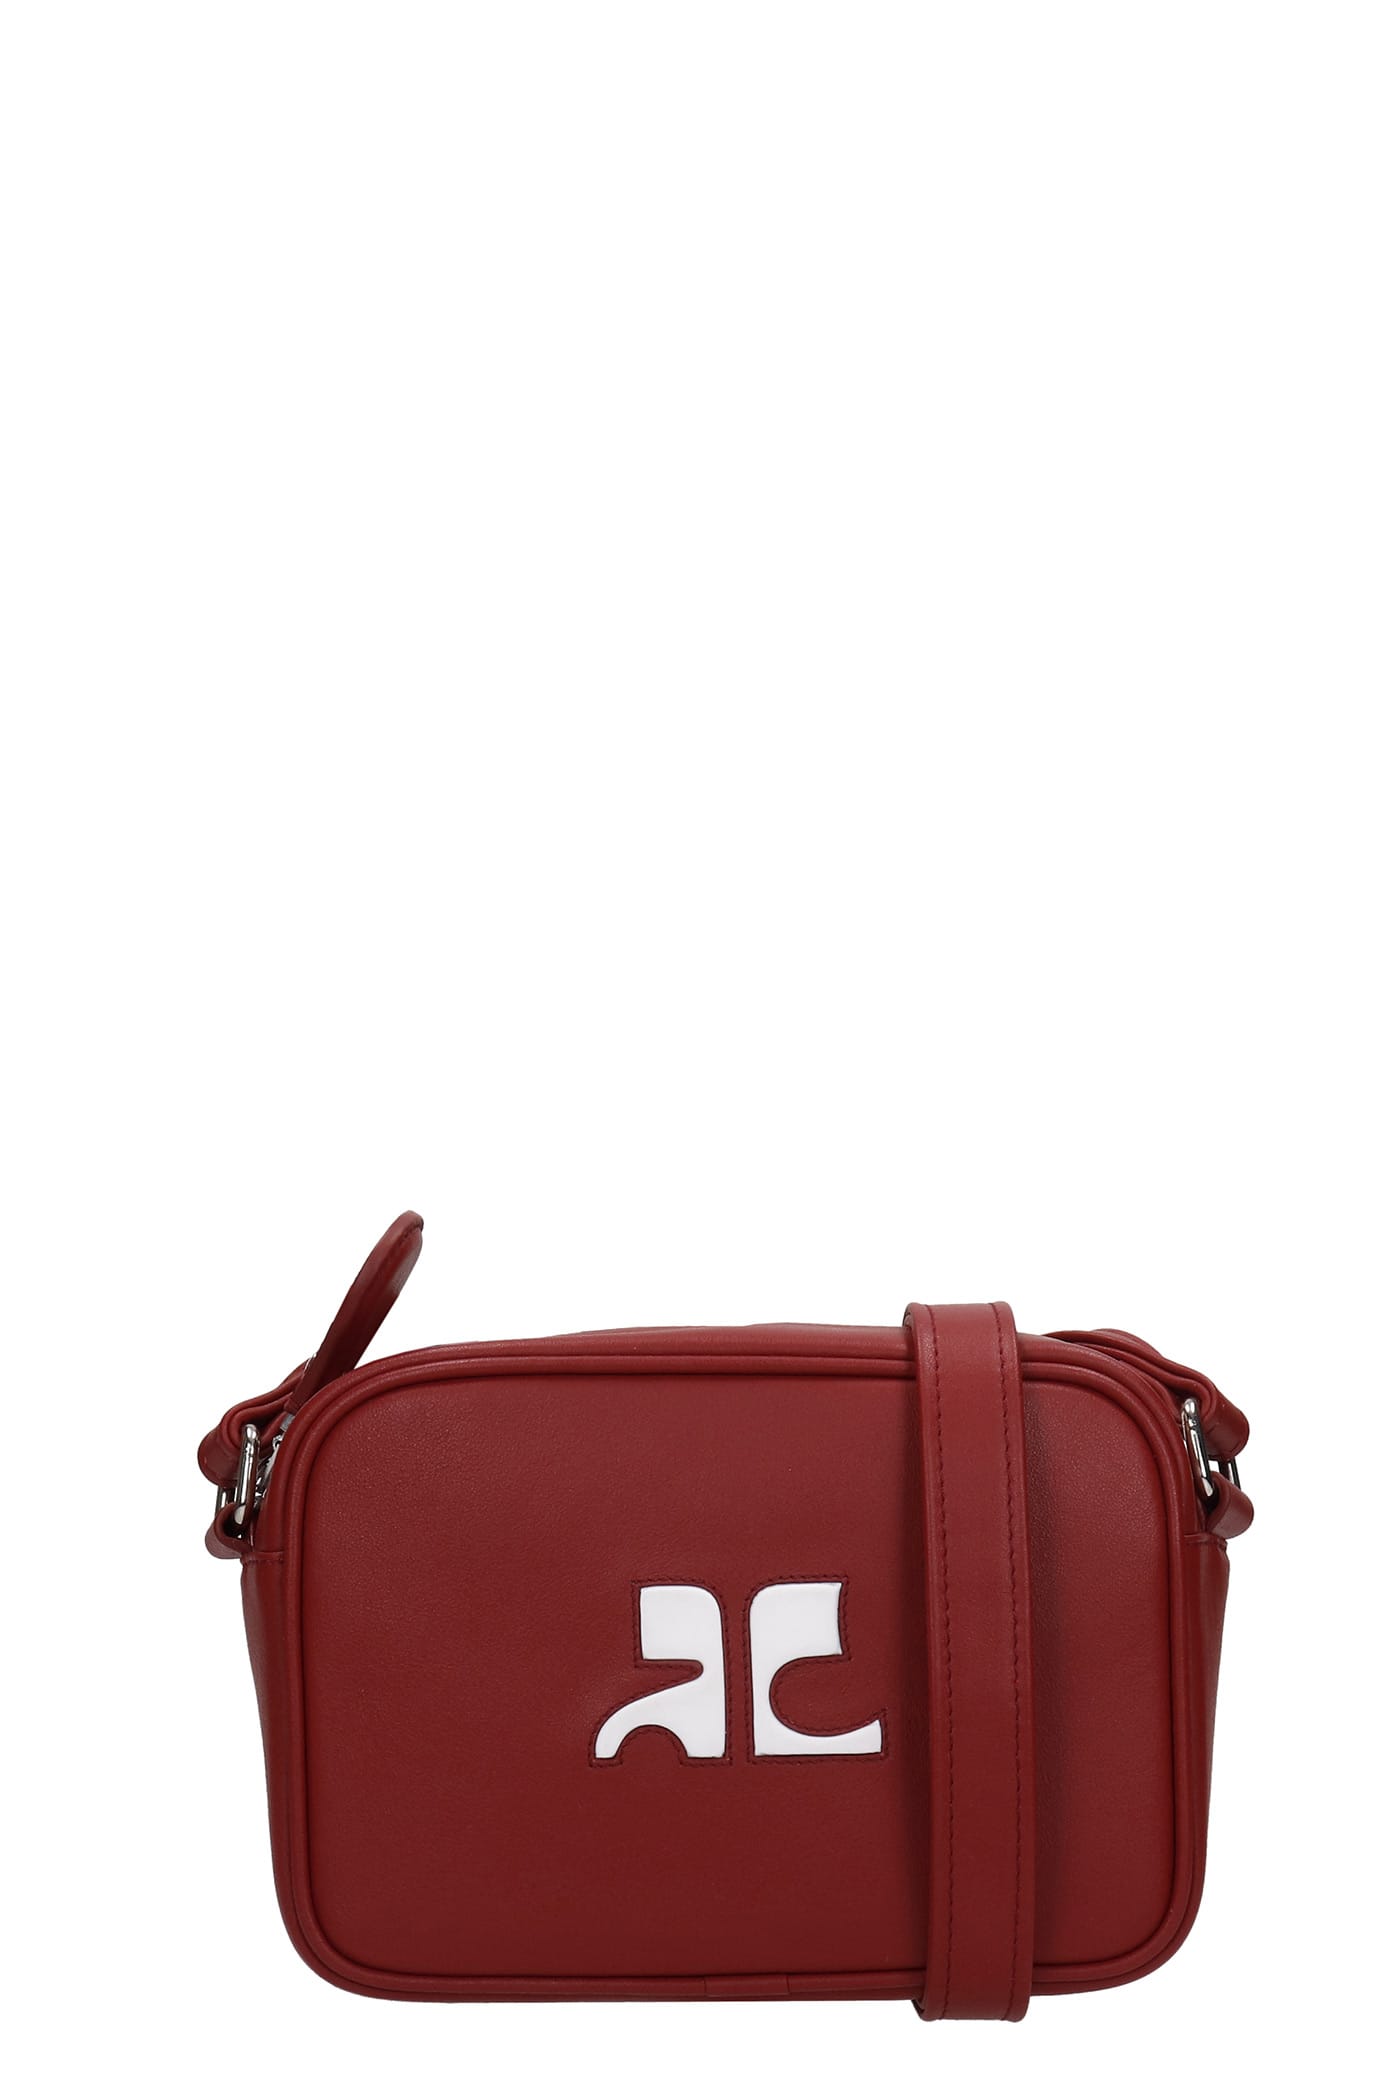 Courrèges Shoulder Bag In Red Leather